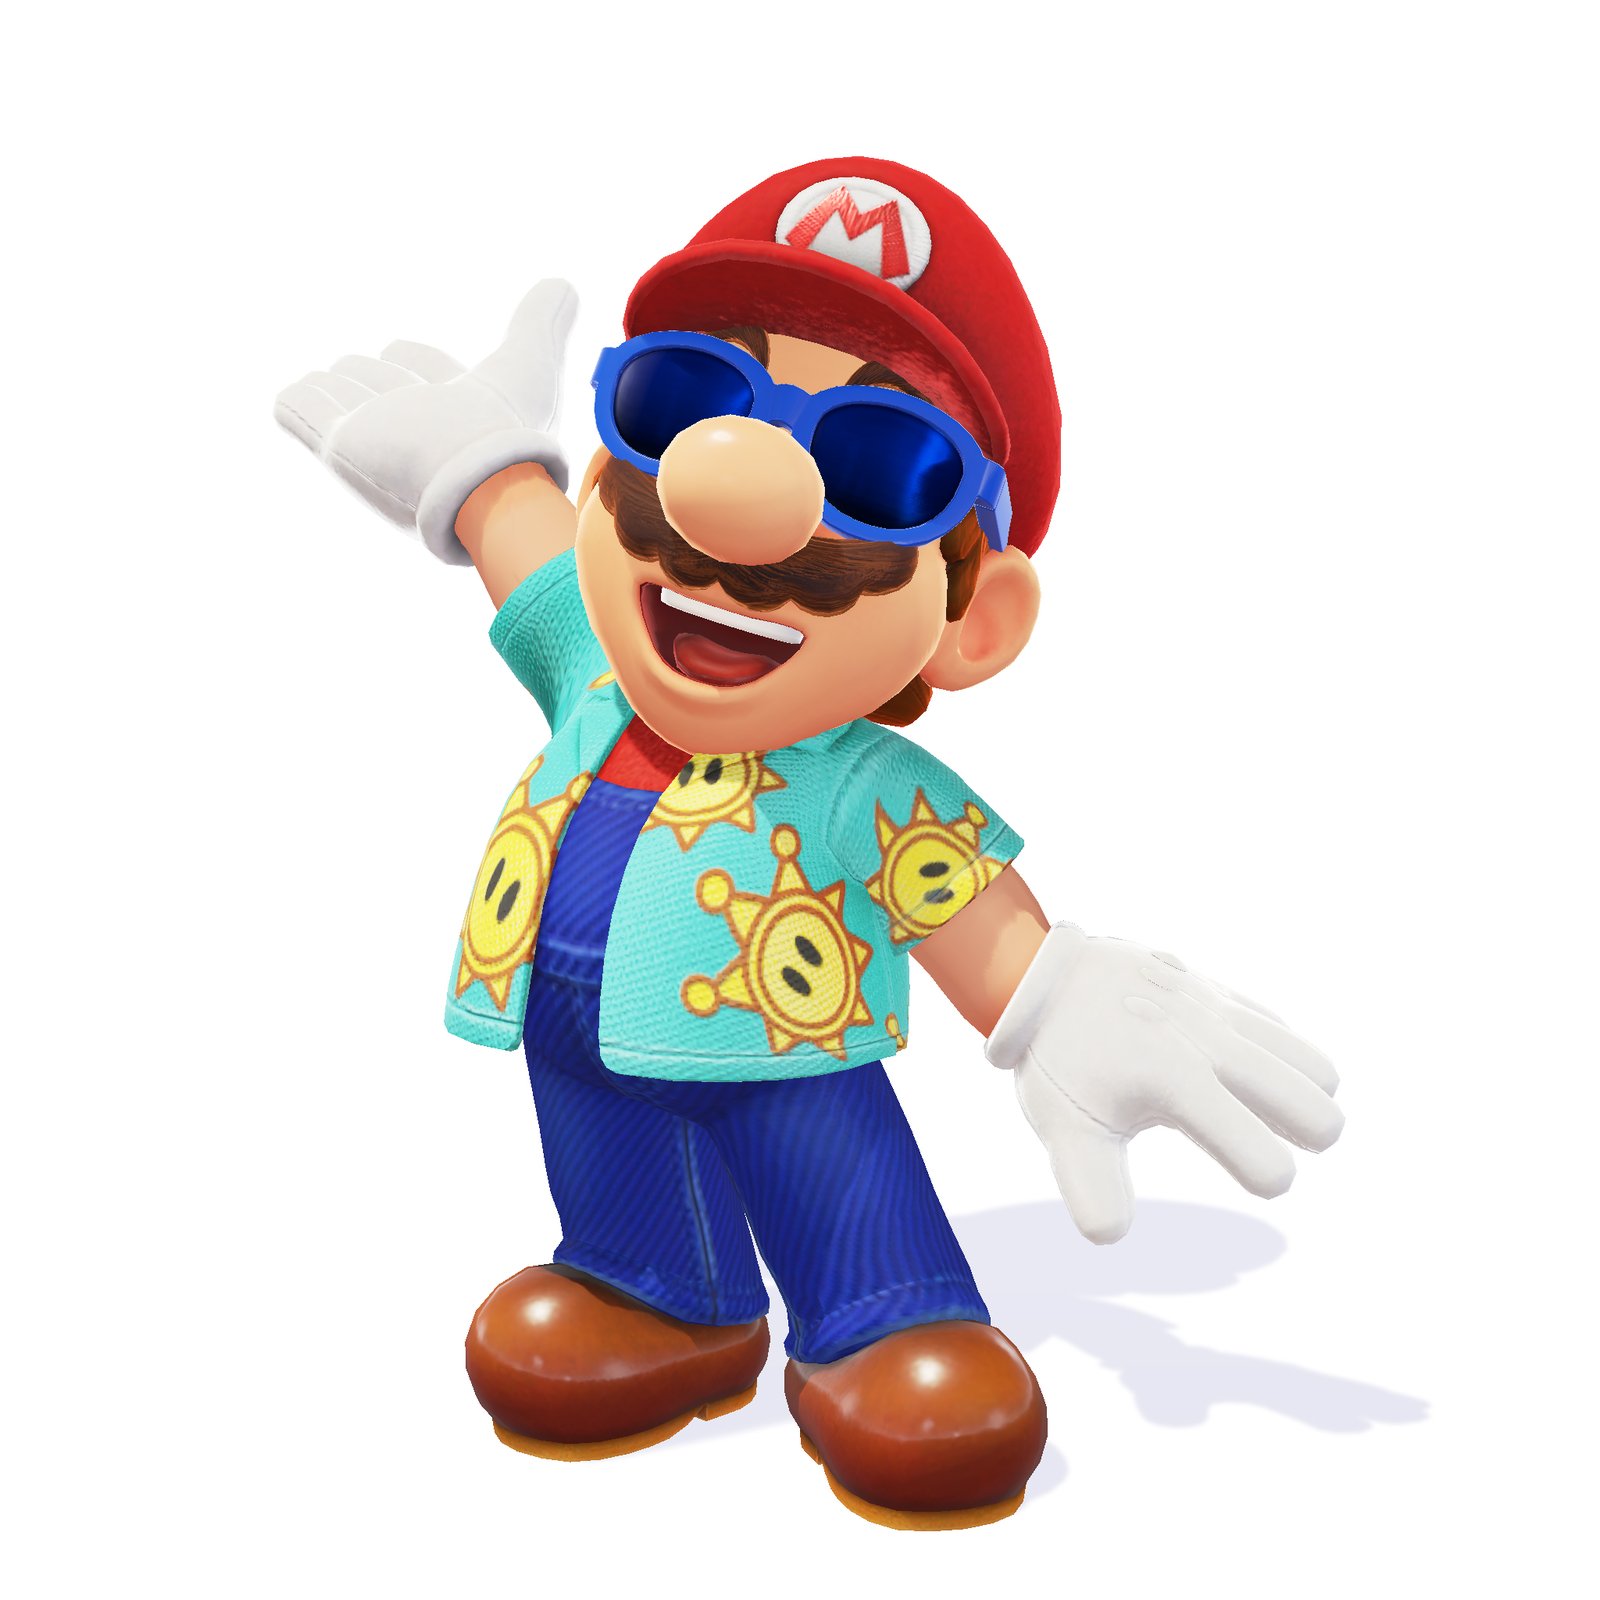 Super Mario Odyssey: Kingdom Pass [Super Mario Odyssey] [Mods]